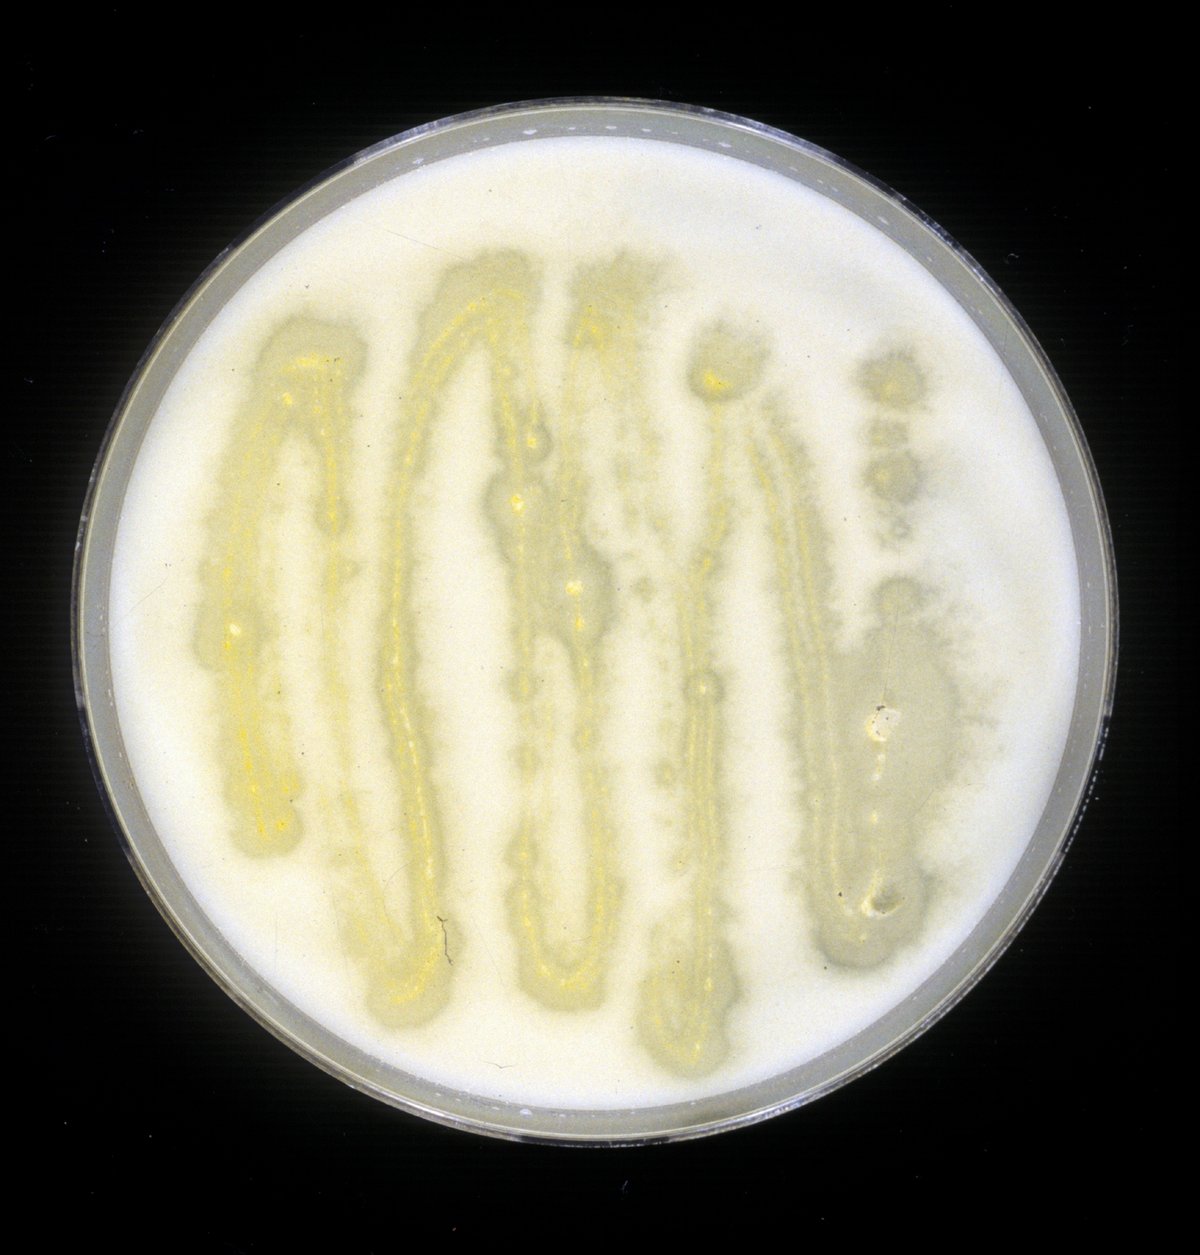 Der filamentöse Pilz Ashbya gossypii produziert Vitamin B2. Er ist deswegen gelb gefärbt. Wächst er auf einer dünnen, hier weißen, Schicht aus pflanzlichem Fett, löst sich diese auf. 